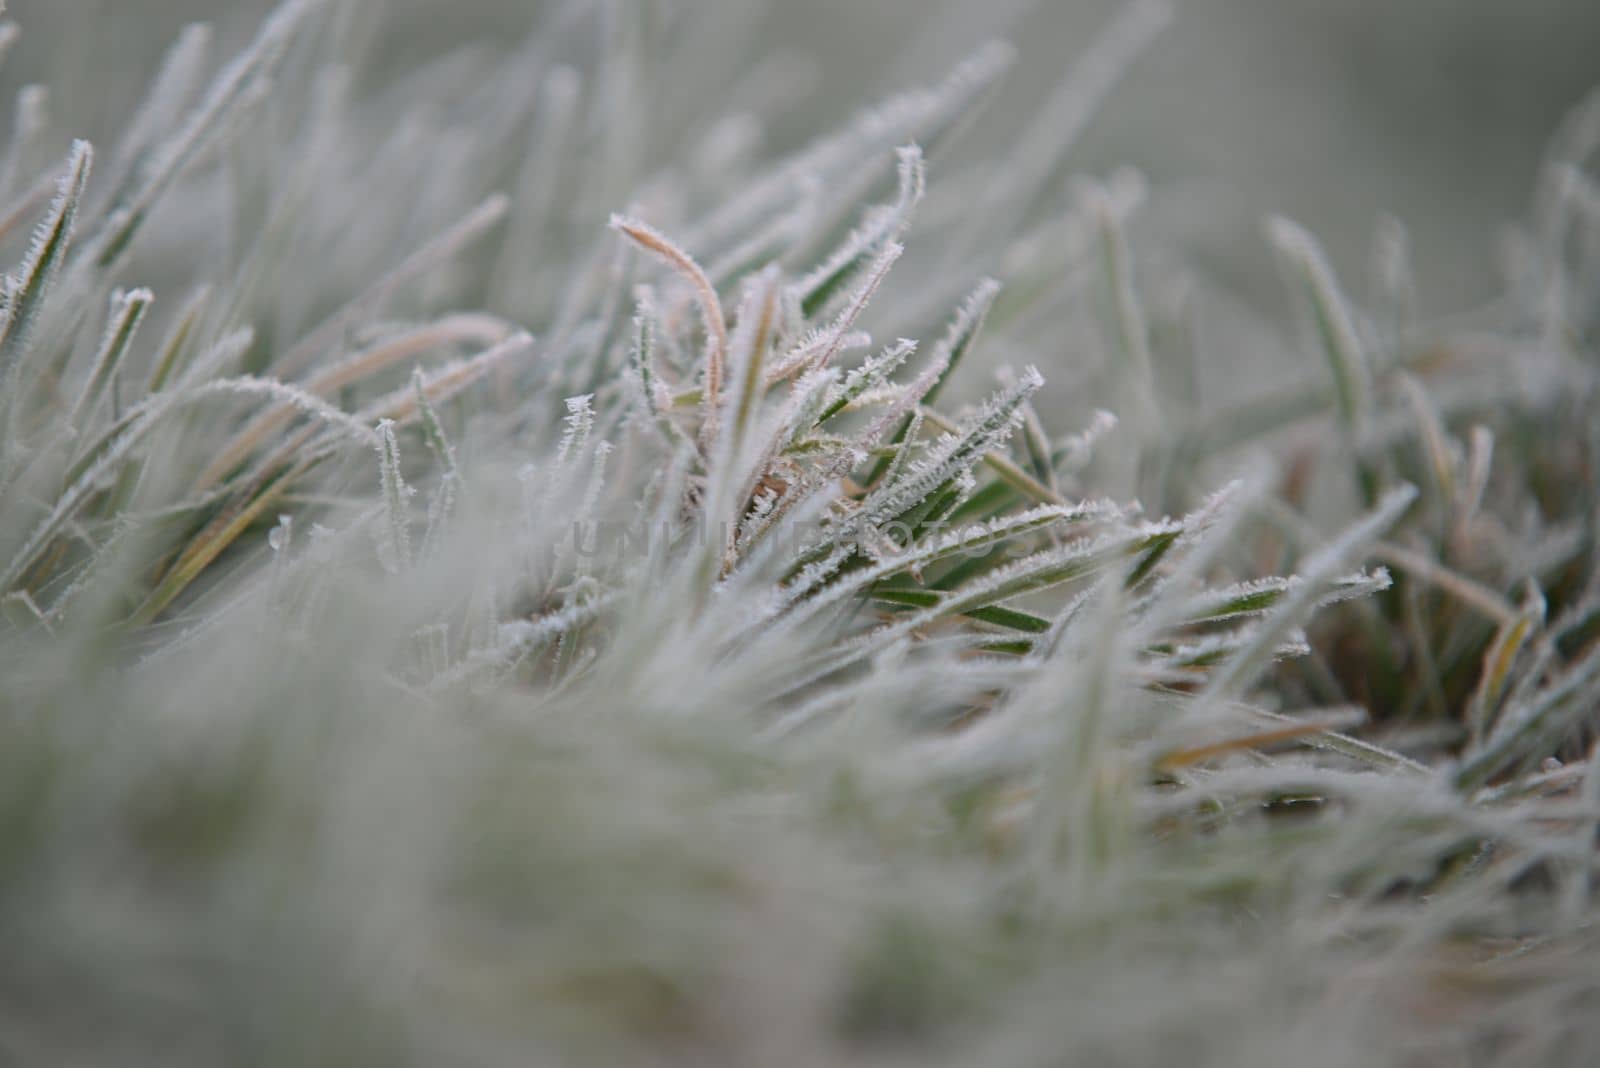 Frozen green grass as a close-up